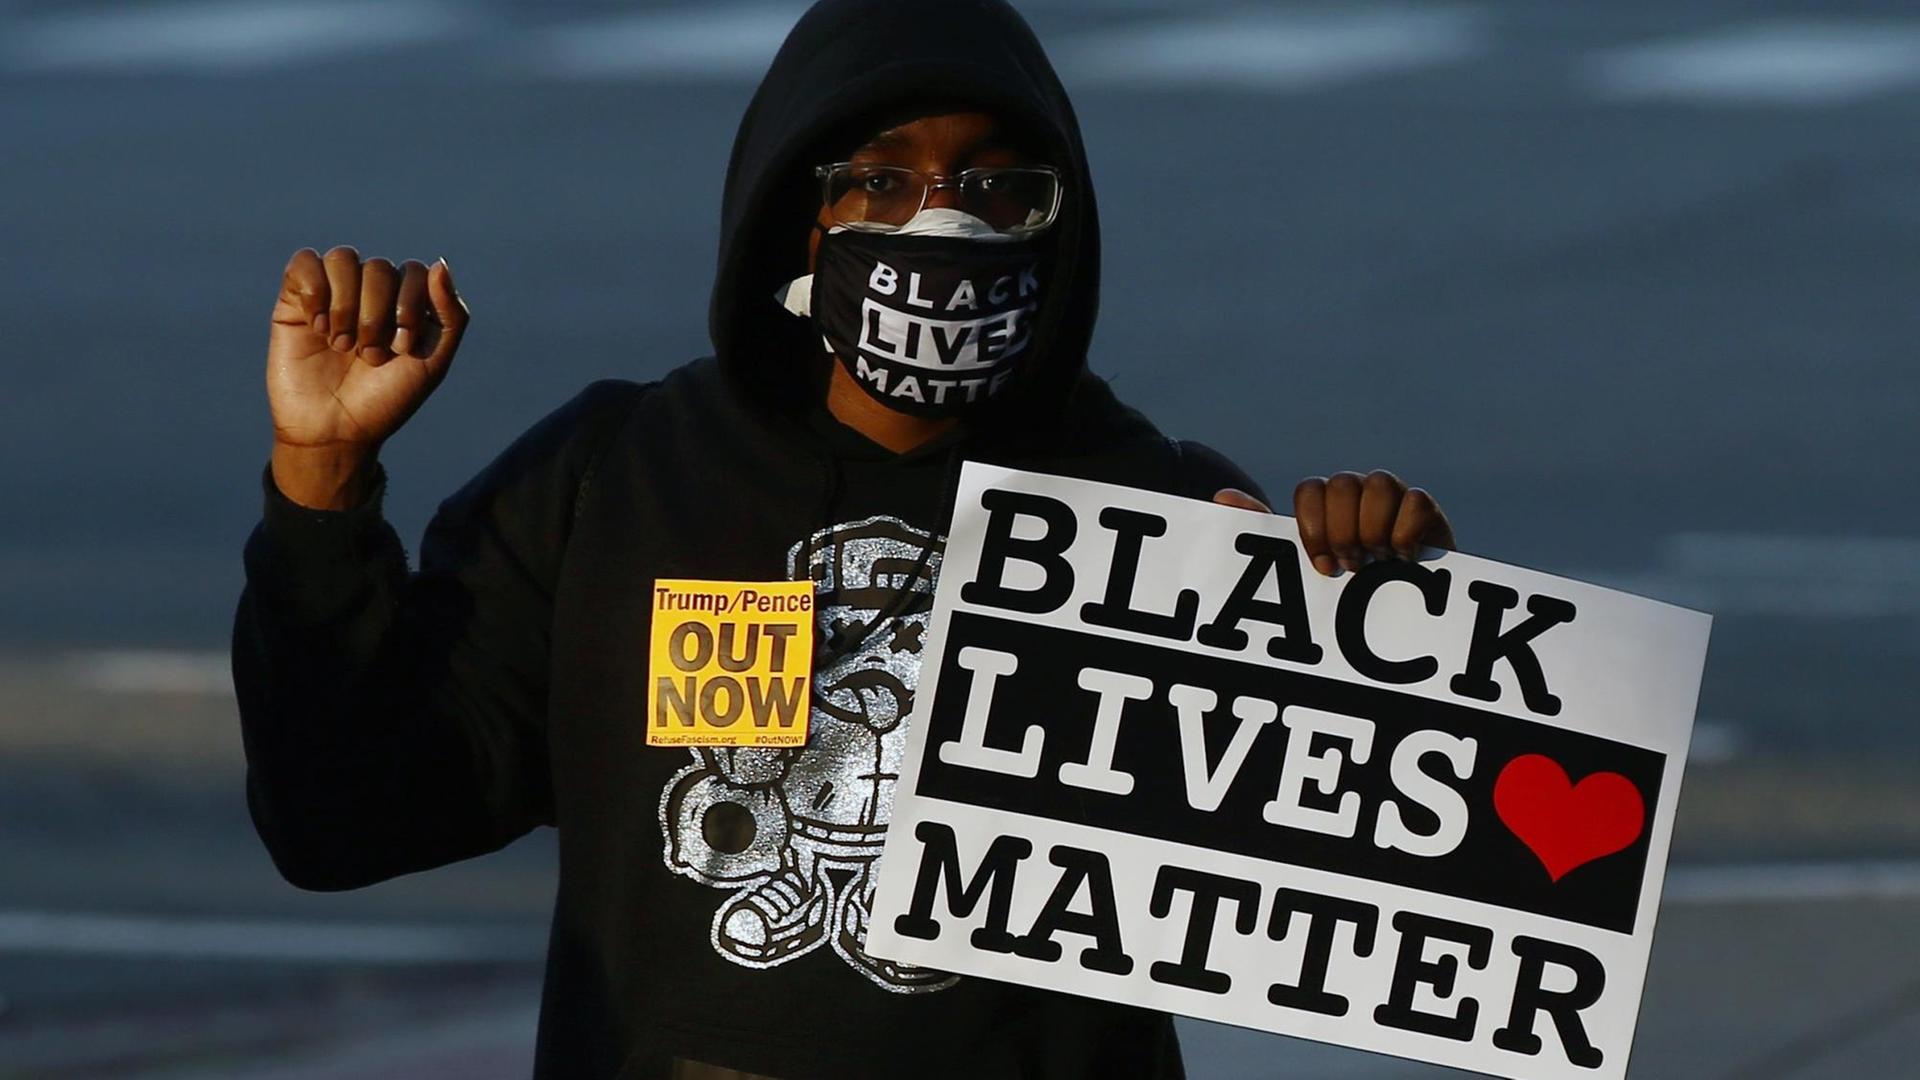 Ein Aforamerikaner mit einem "Black Lives Matter"-Schild in der linken Hand. Der rechte Arm ist nach oben angewinkelt und die Hand zur Faust geballt. Der Mann trägt auch eine Maske mit dem selben Slogan und einen schwarzen Kapuzenpullover.